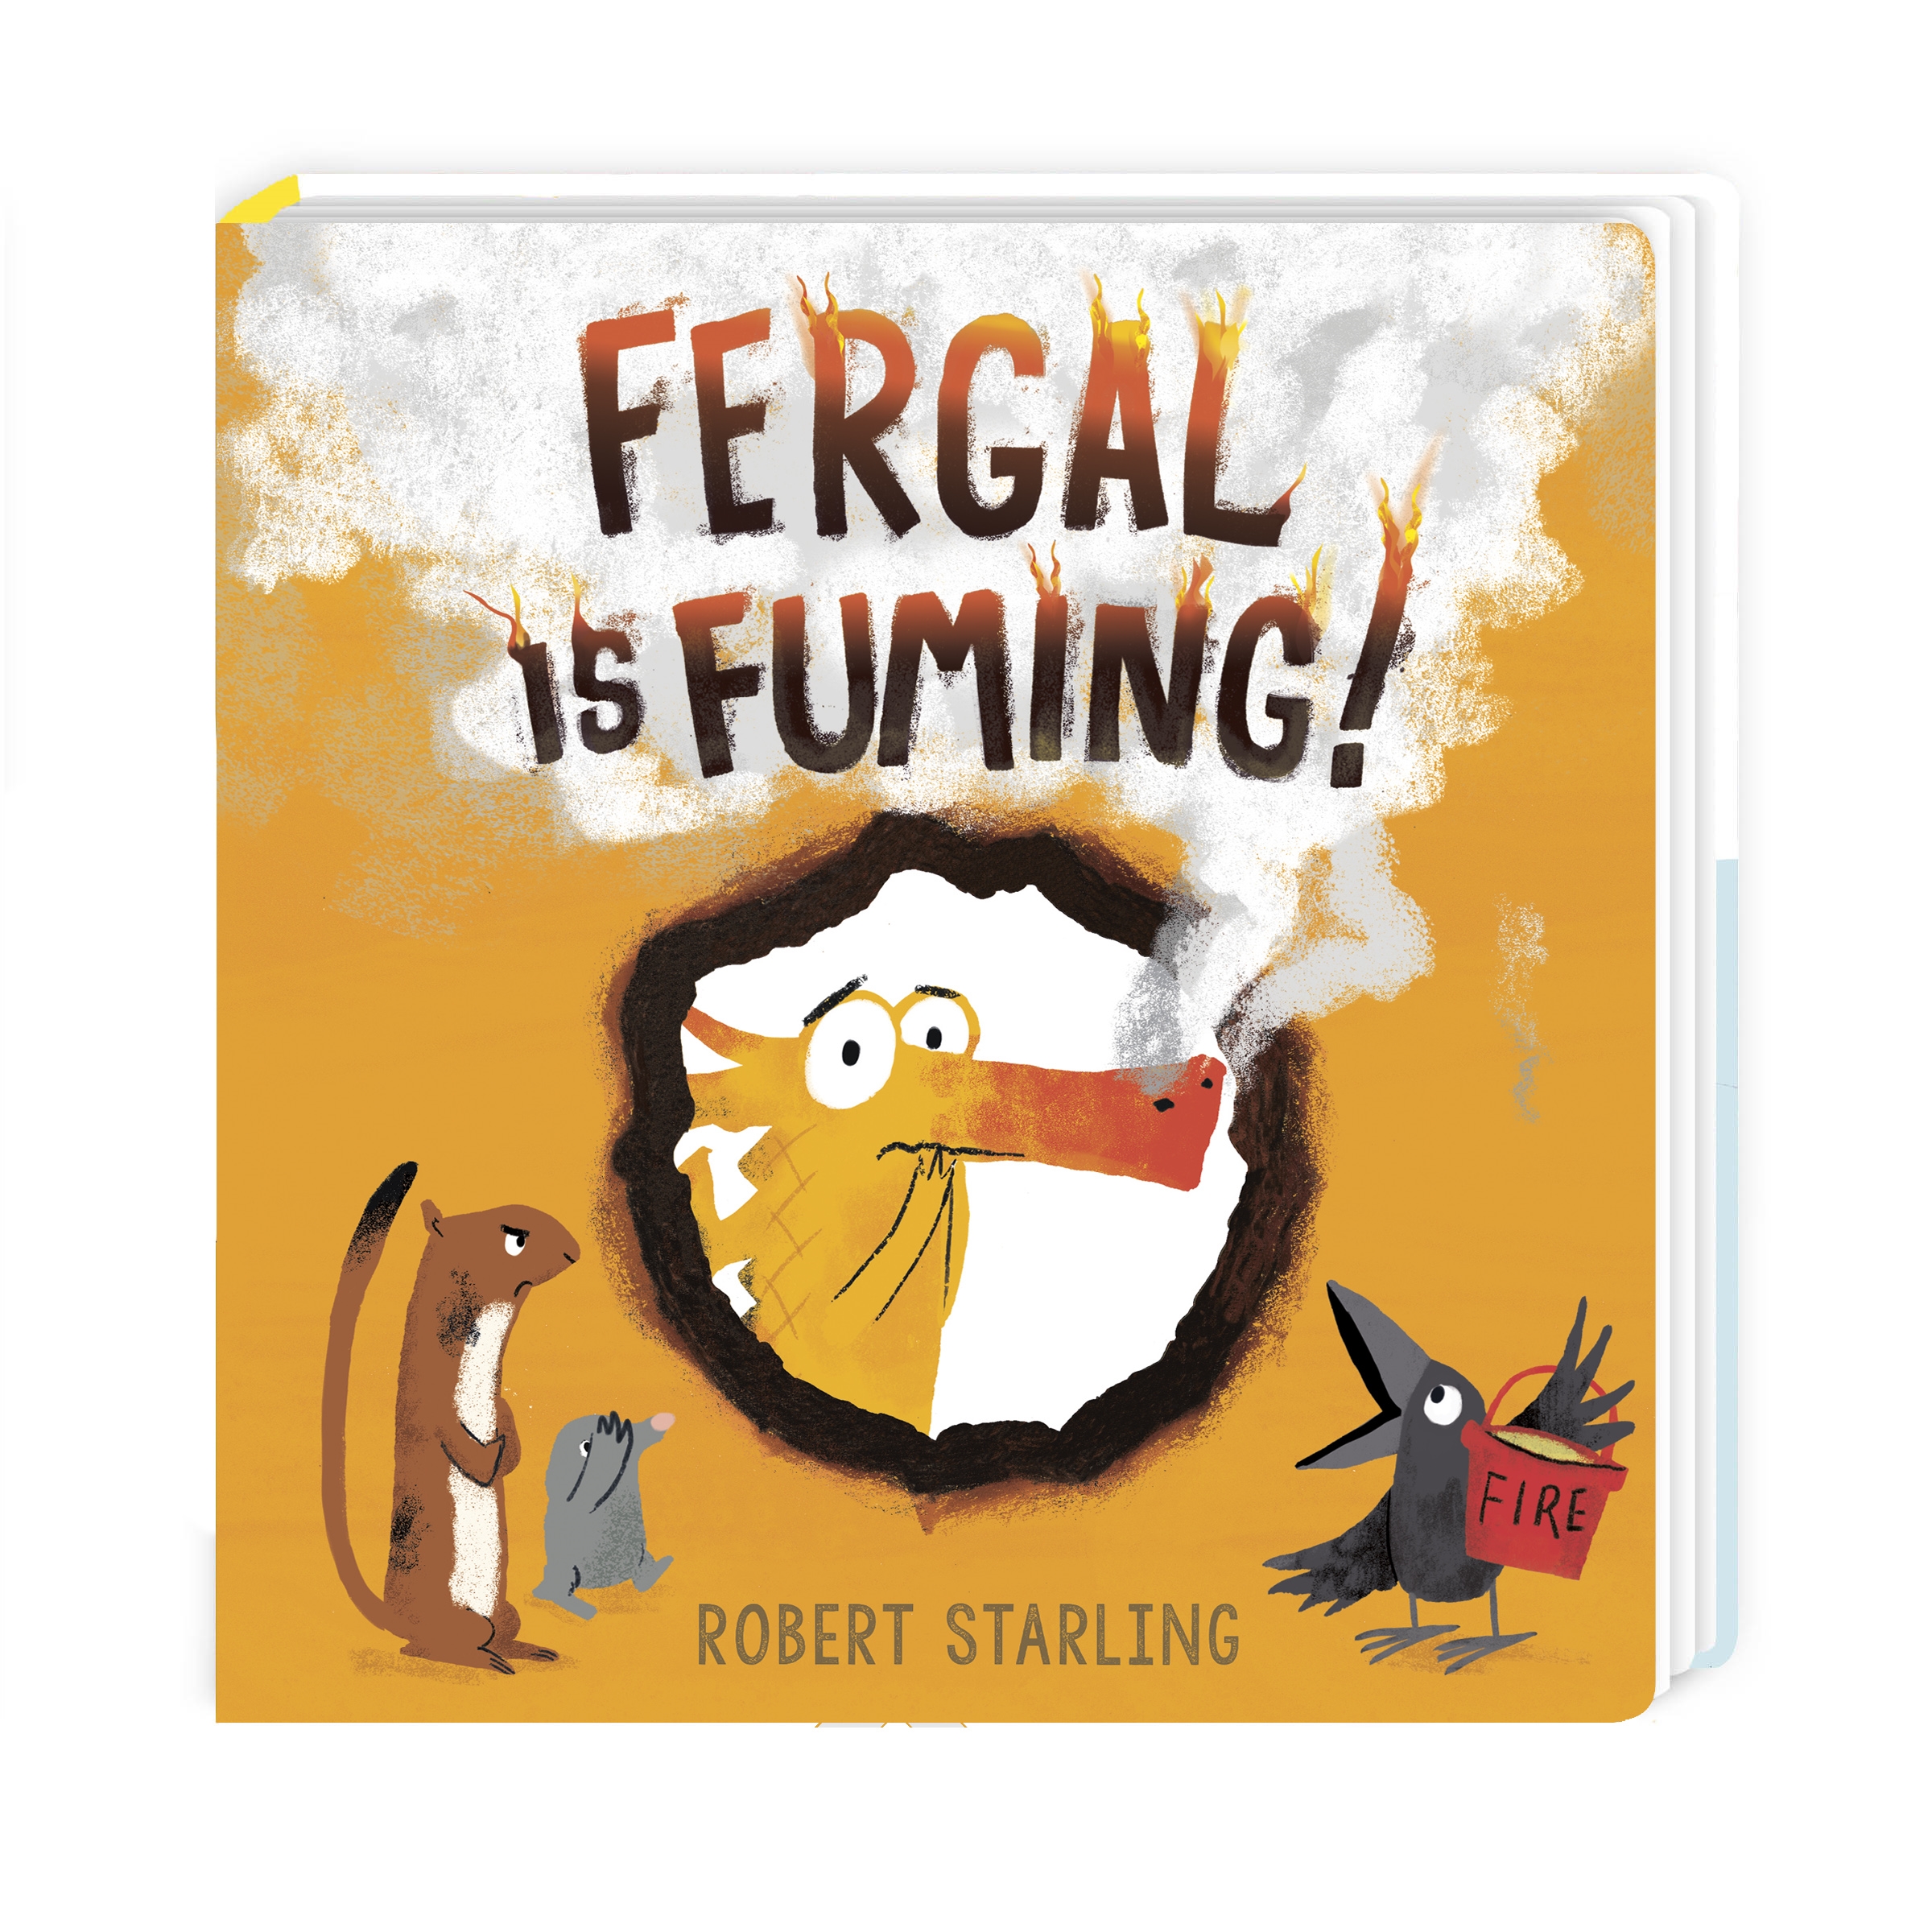 Fergal is Fuming!